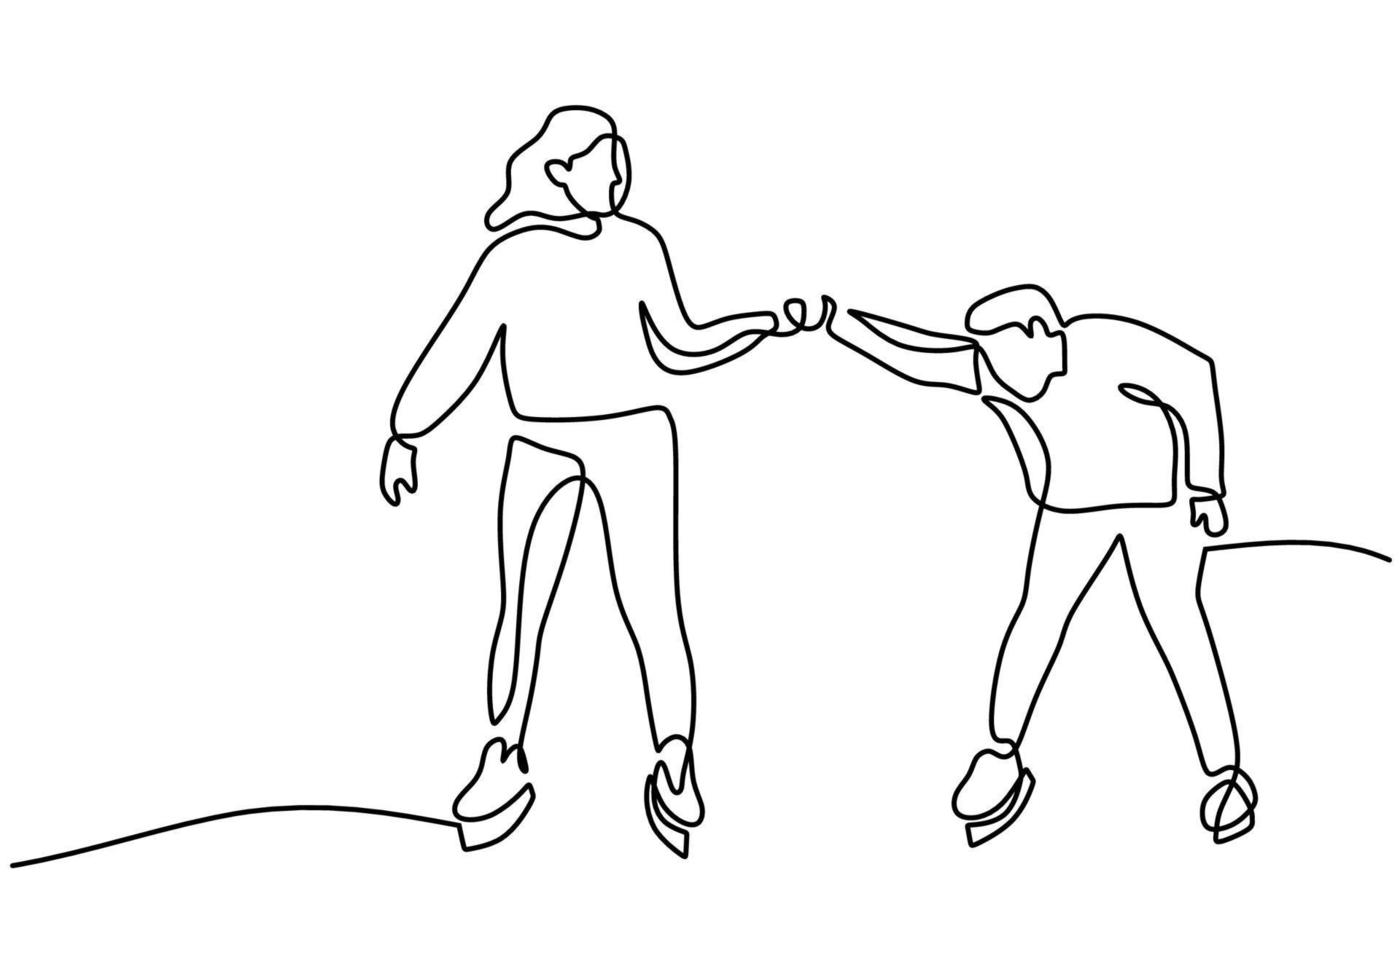 dessin à la main d'une ligne de patinage sur glace en couple sur fond blanc. vecteur